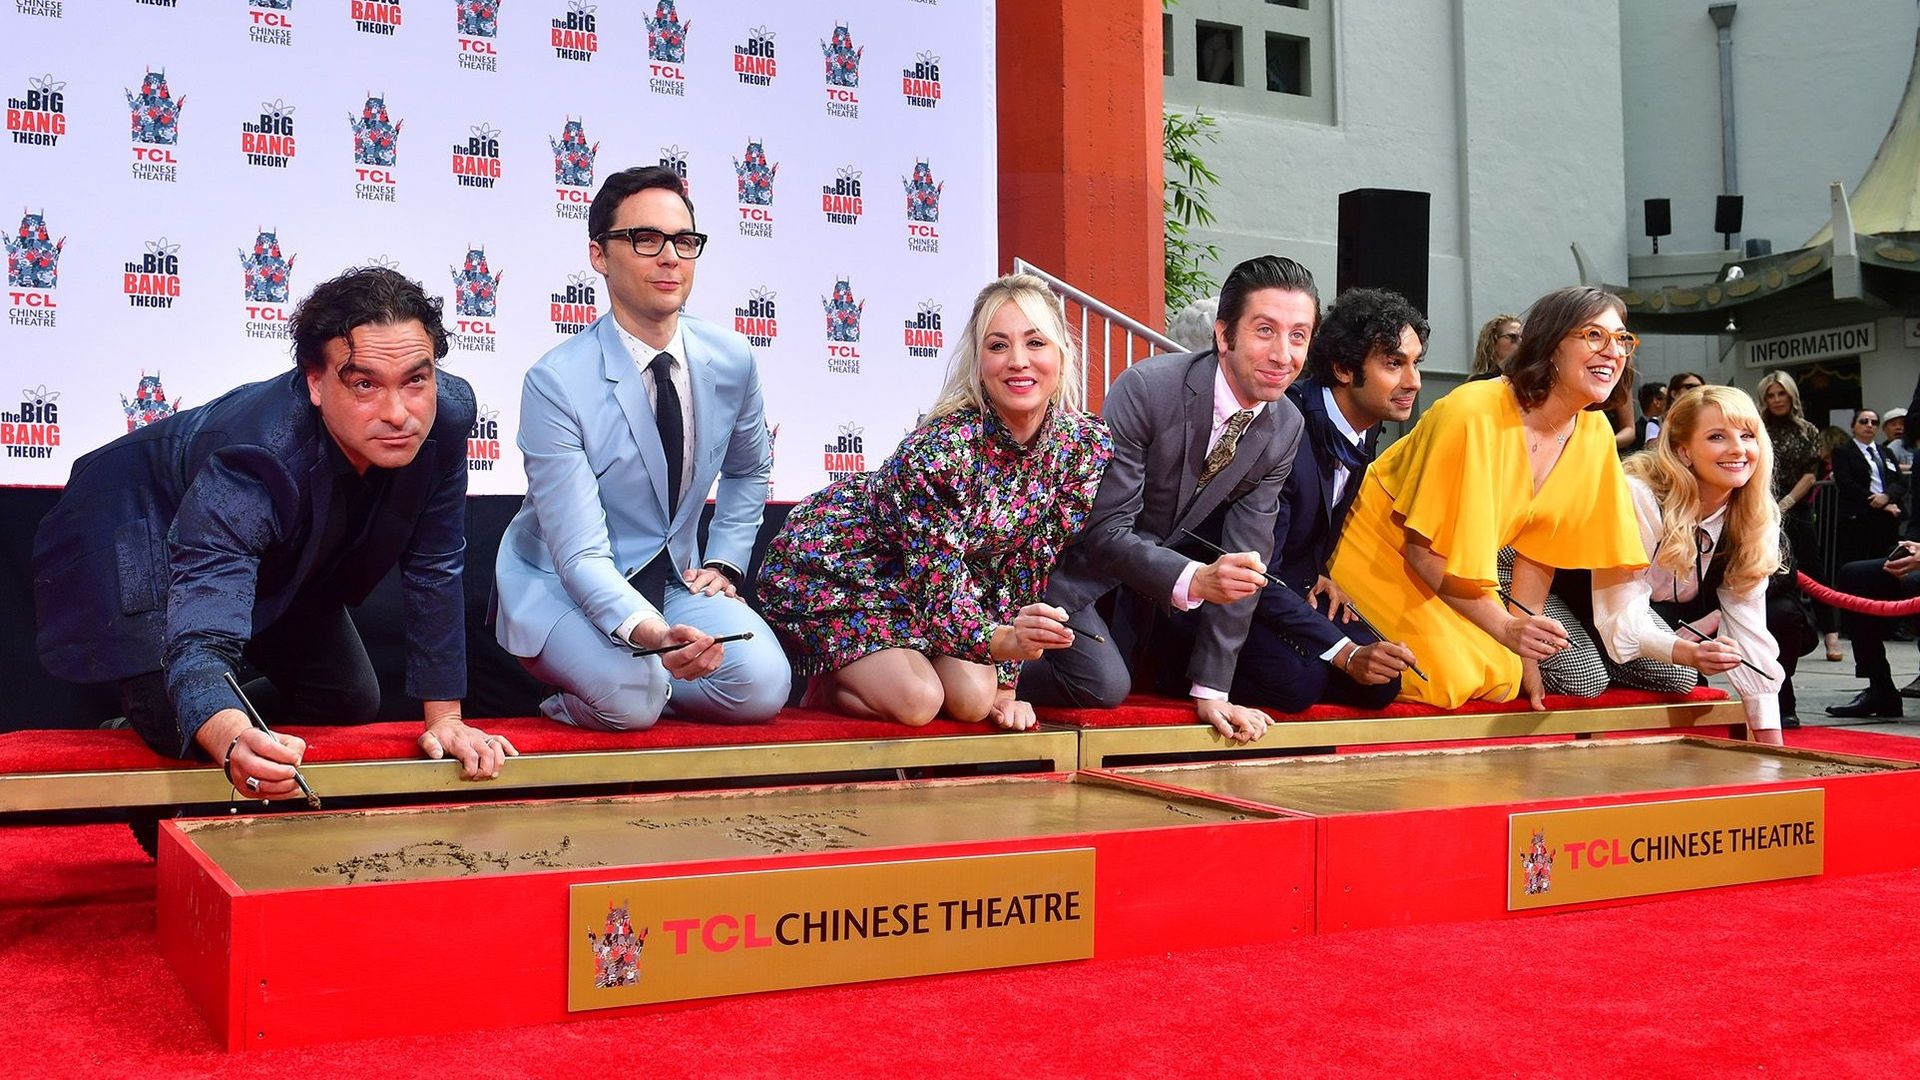 Les acteurs de "Big Bang Theory" ont laissé mercredi leurs empreintes dans le ciment au Chinese Theatre, cinéma historique de Hollywood, au lendemain du dernier jour de tournage de la série à succès.